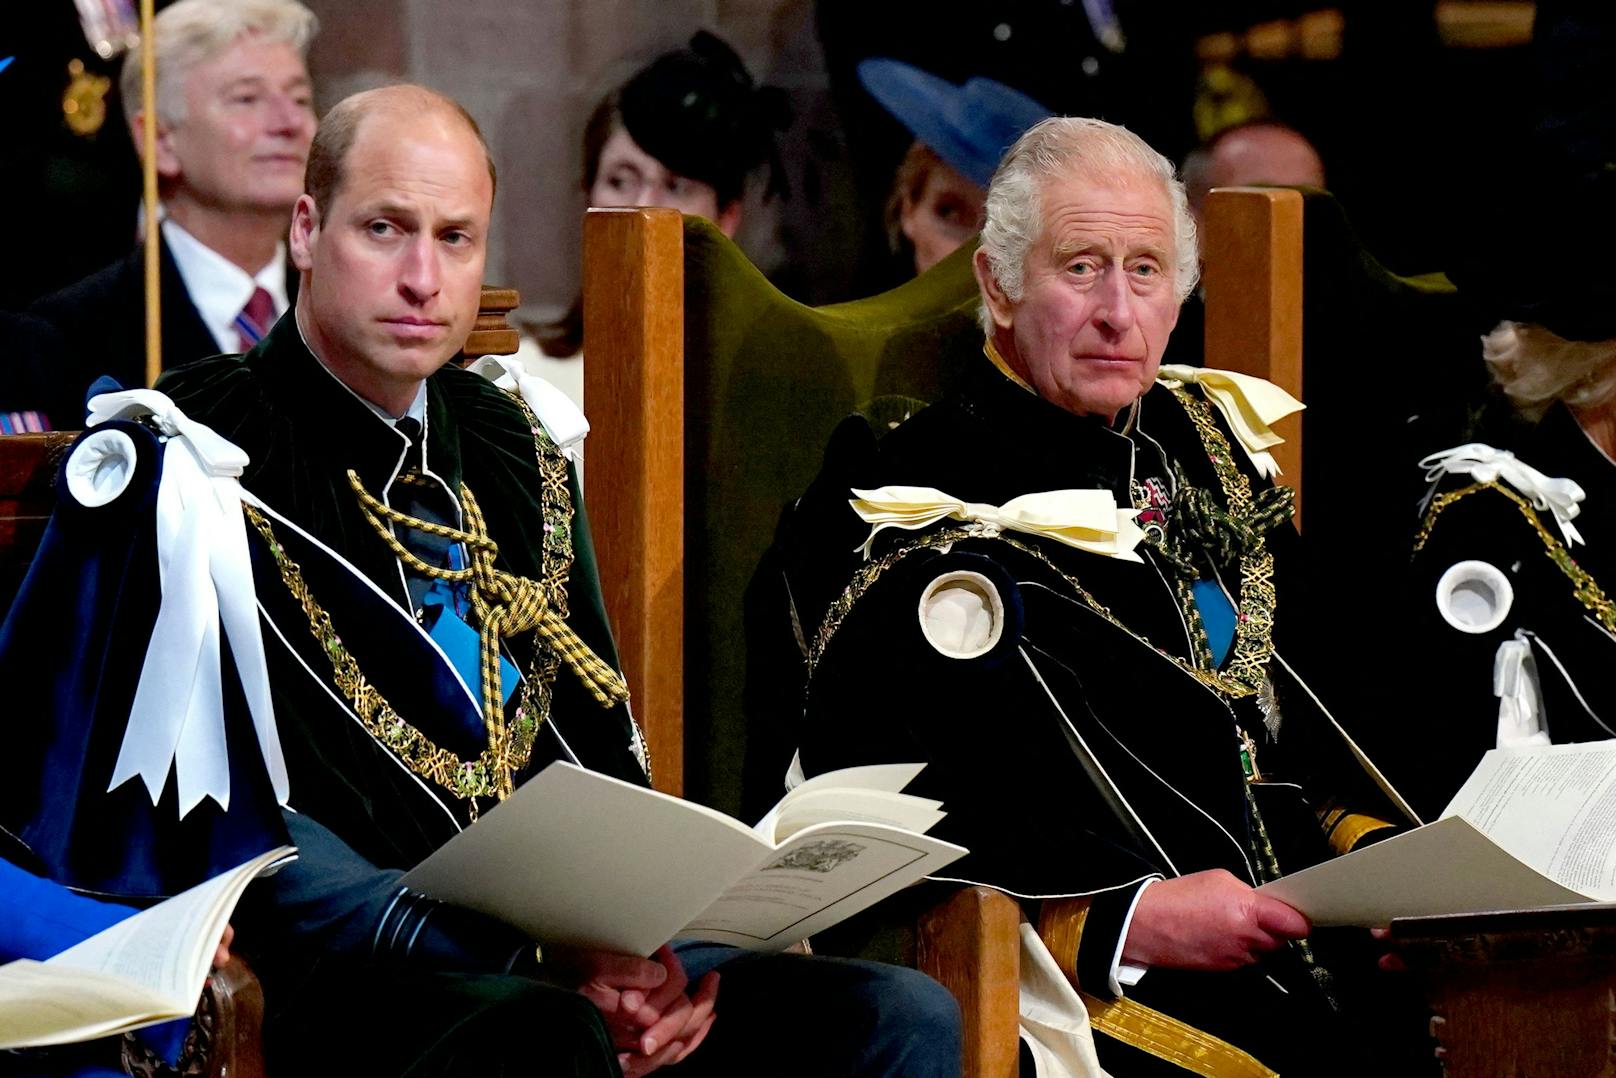 Prinz William verlangt jetzt von seinem Vater Miete